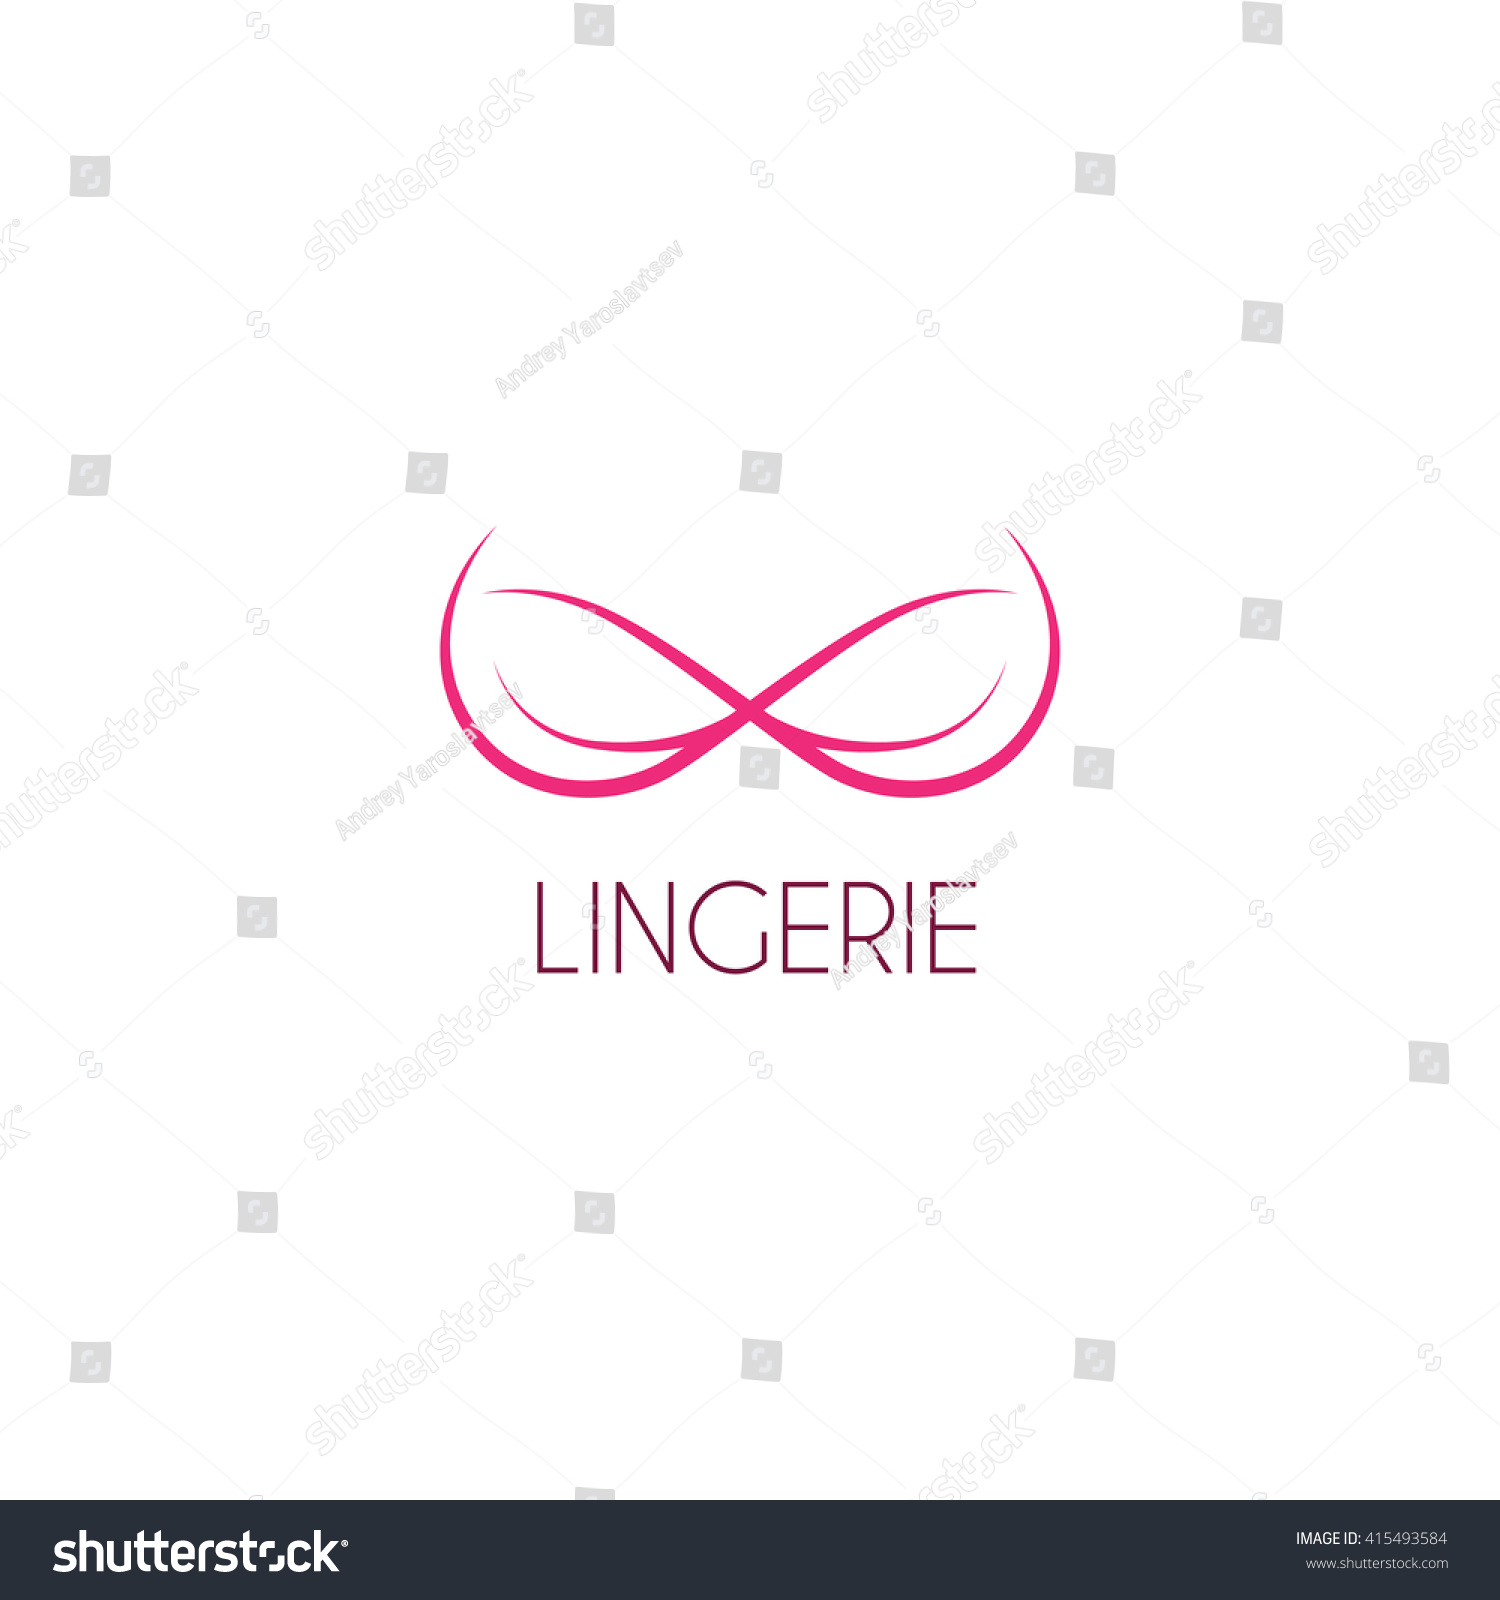 Lingerie Logos